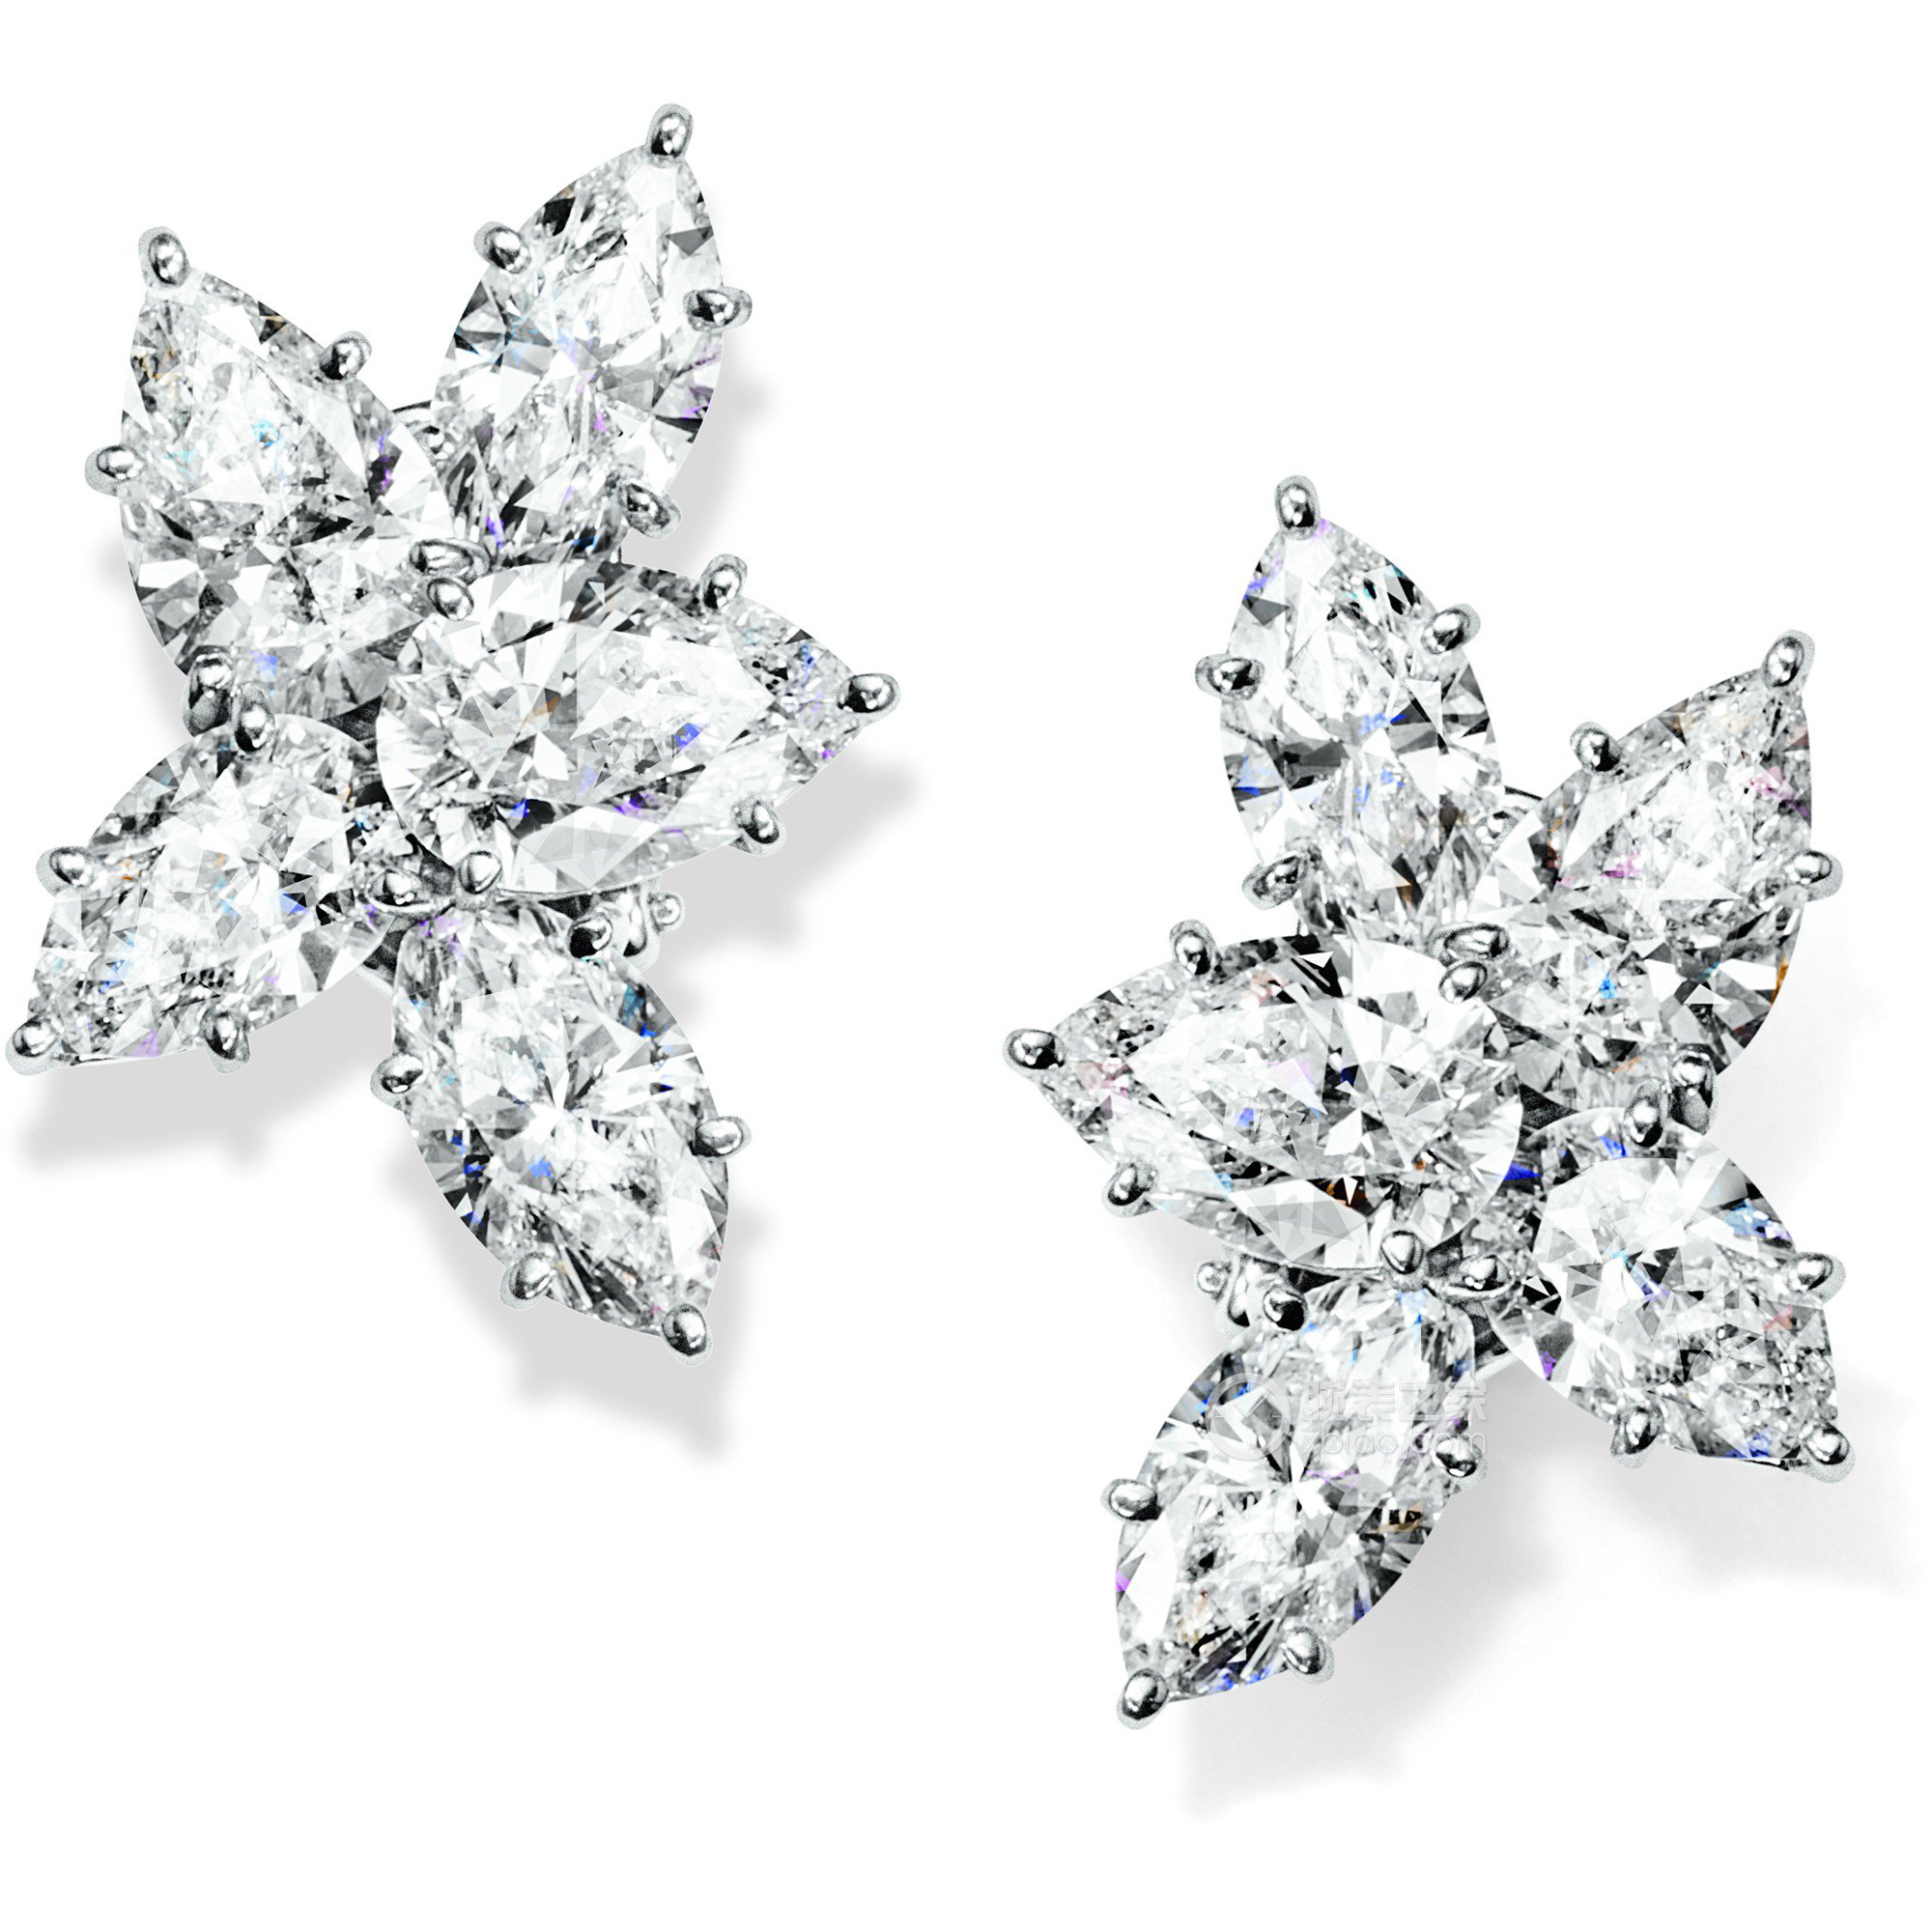 海瑞温斯顿WINSTON CLUSTER珠宝系列 锦簇Winston Cluster系列钻石耳环耳饰